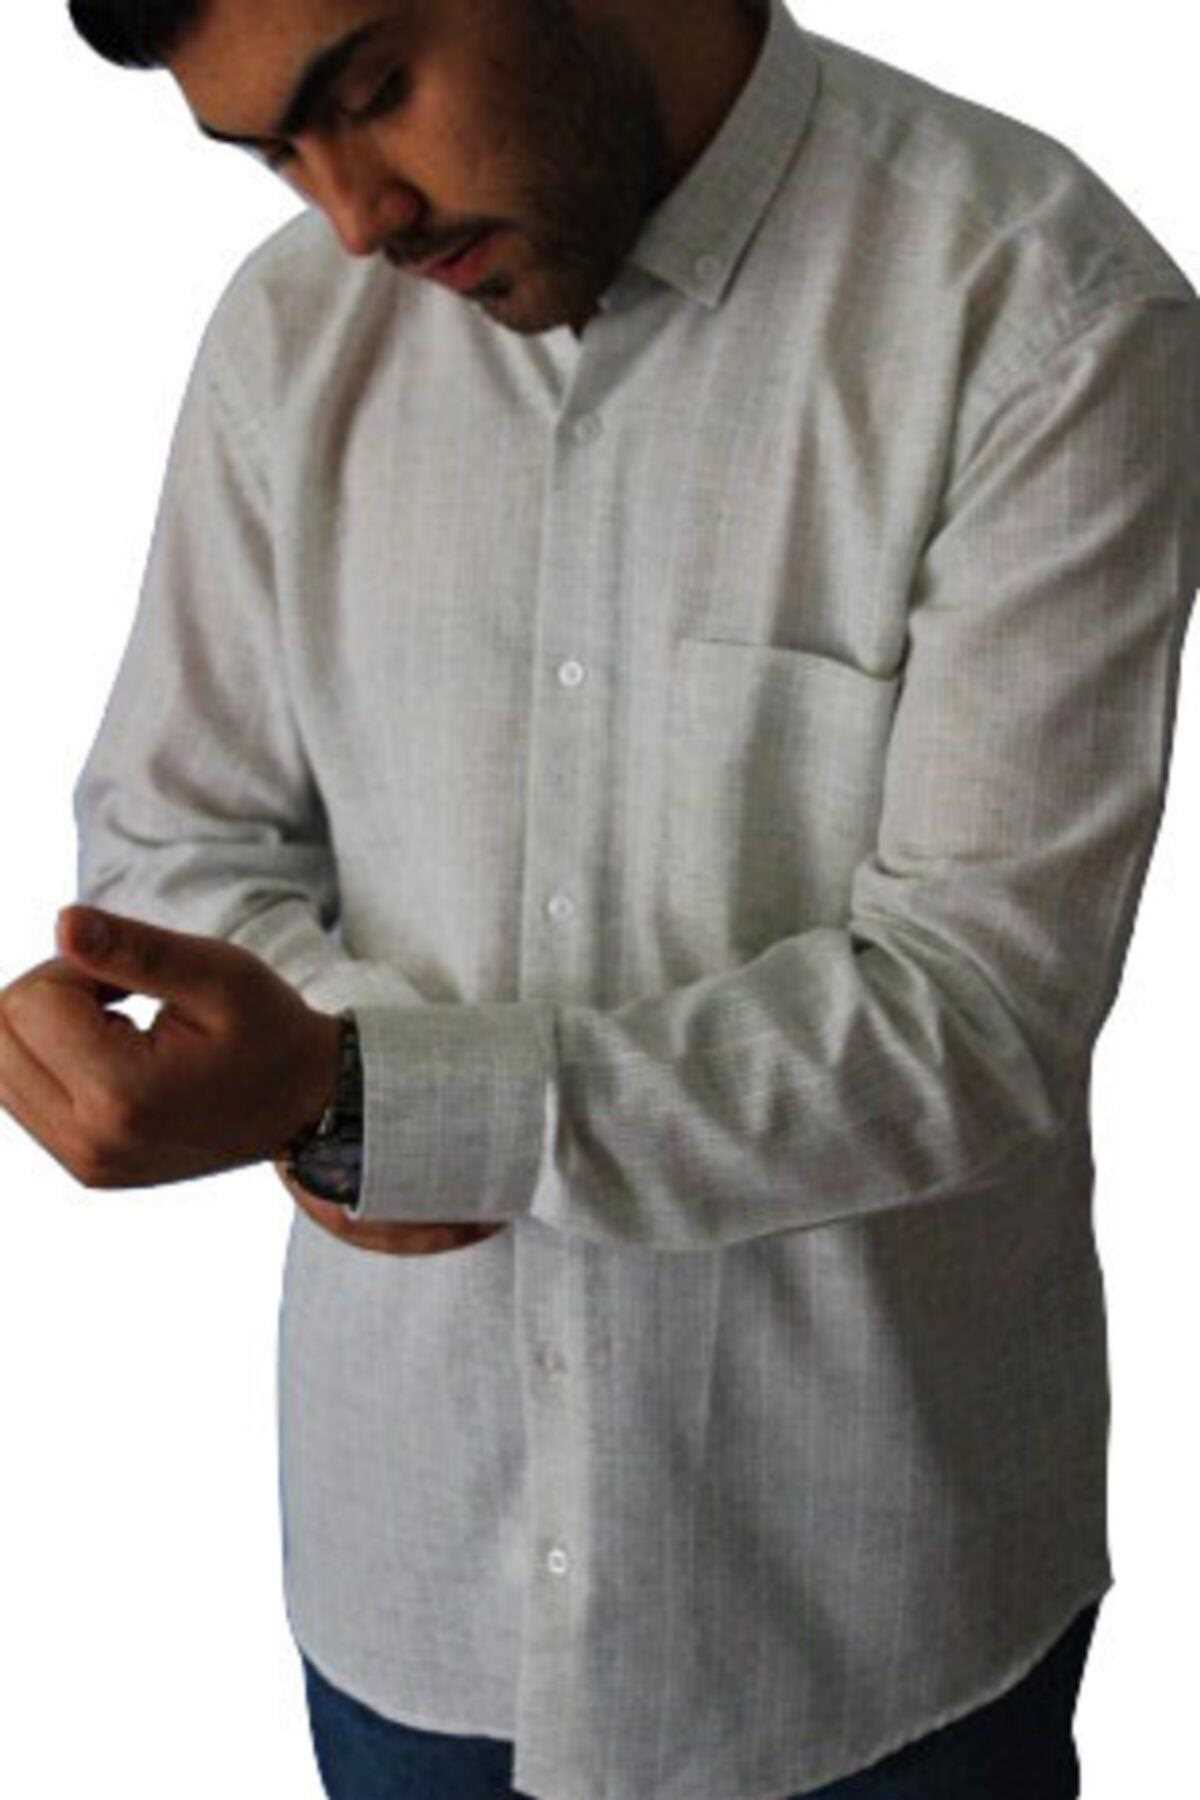 پیراهن مجلسی مردانه از ترکیه برند FOURTUNESS رنگ نقره ای ty147477401